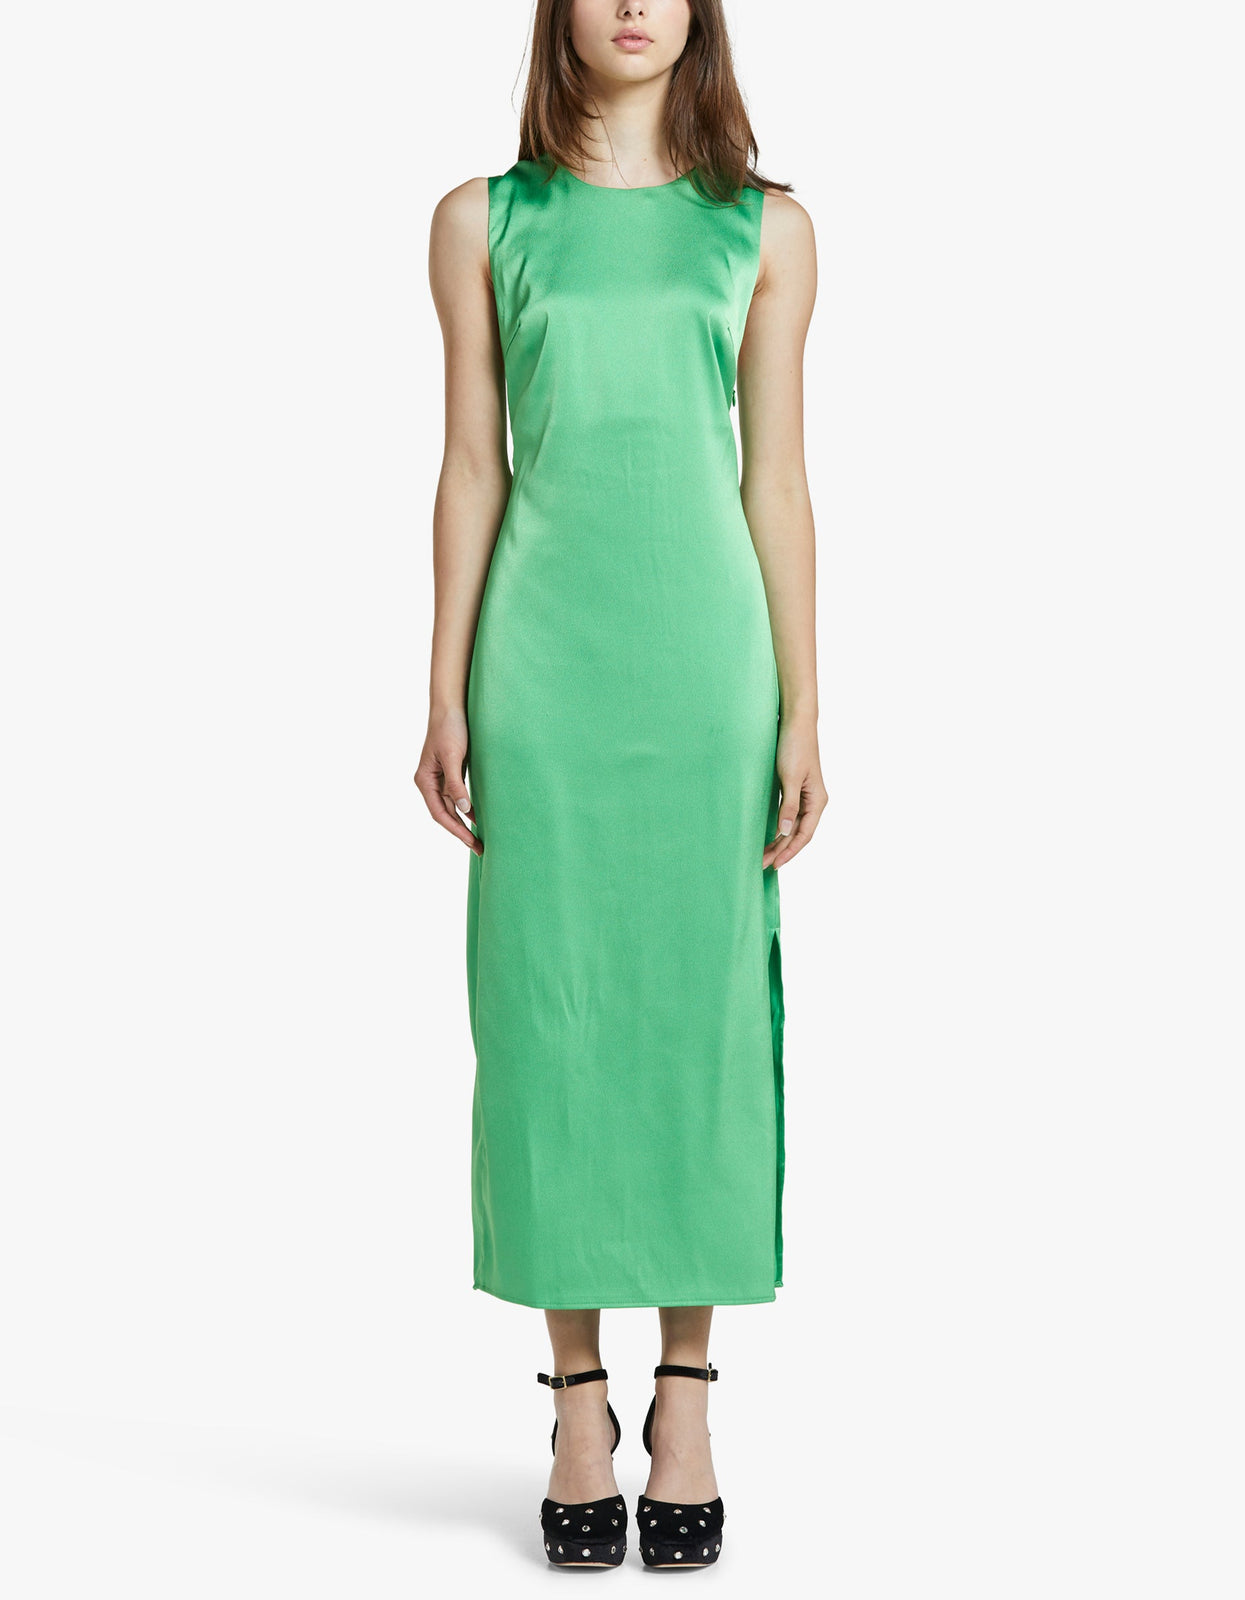 Superette | Scilla Dress 13096 - Vibrant Green